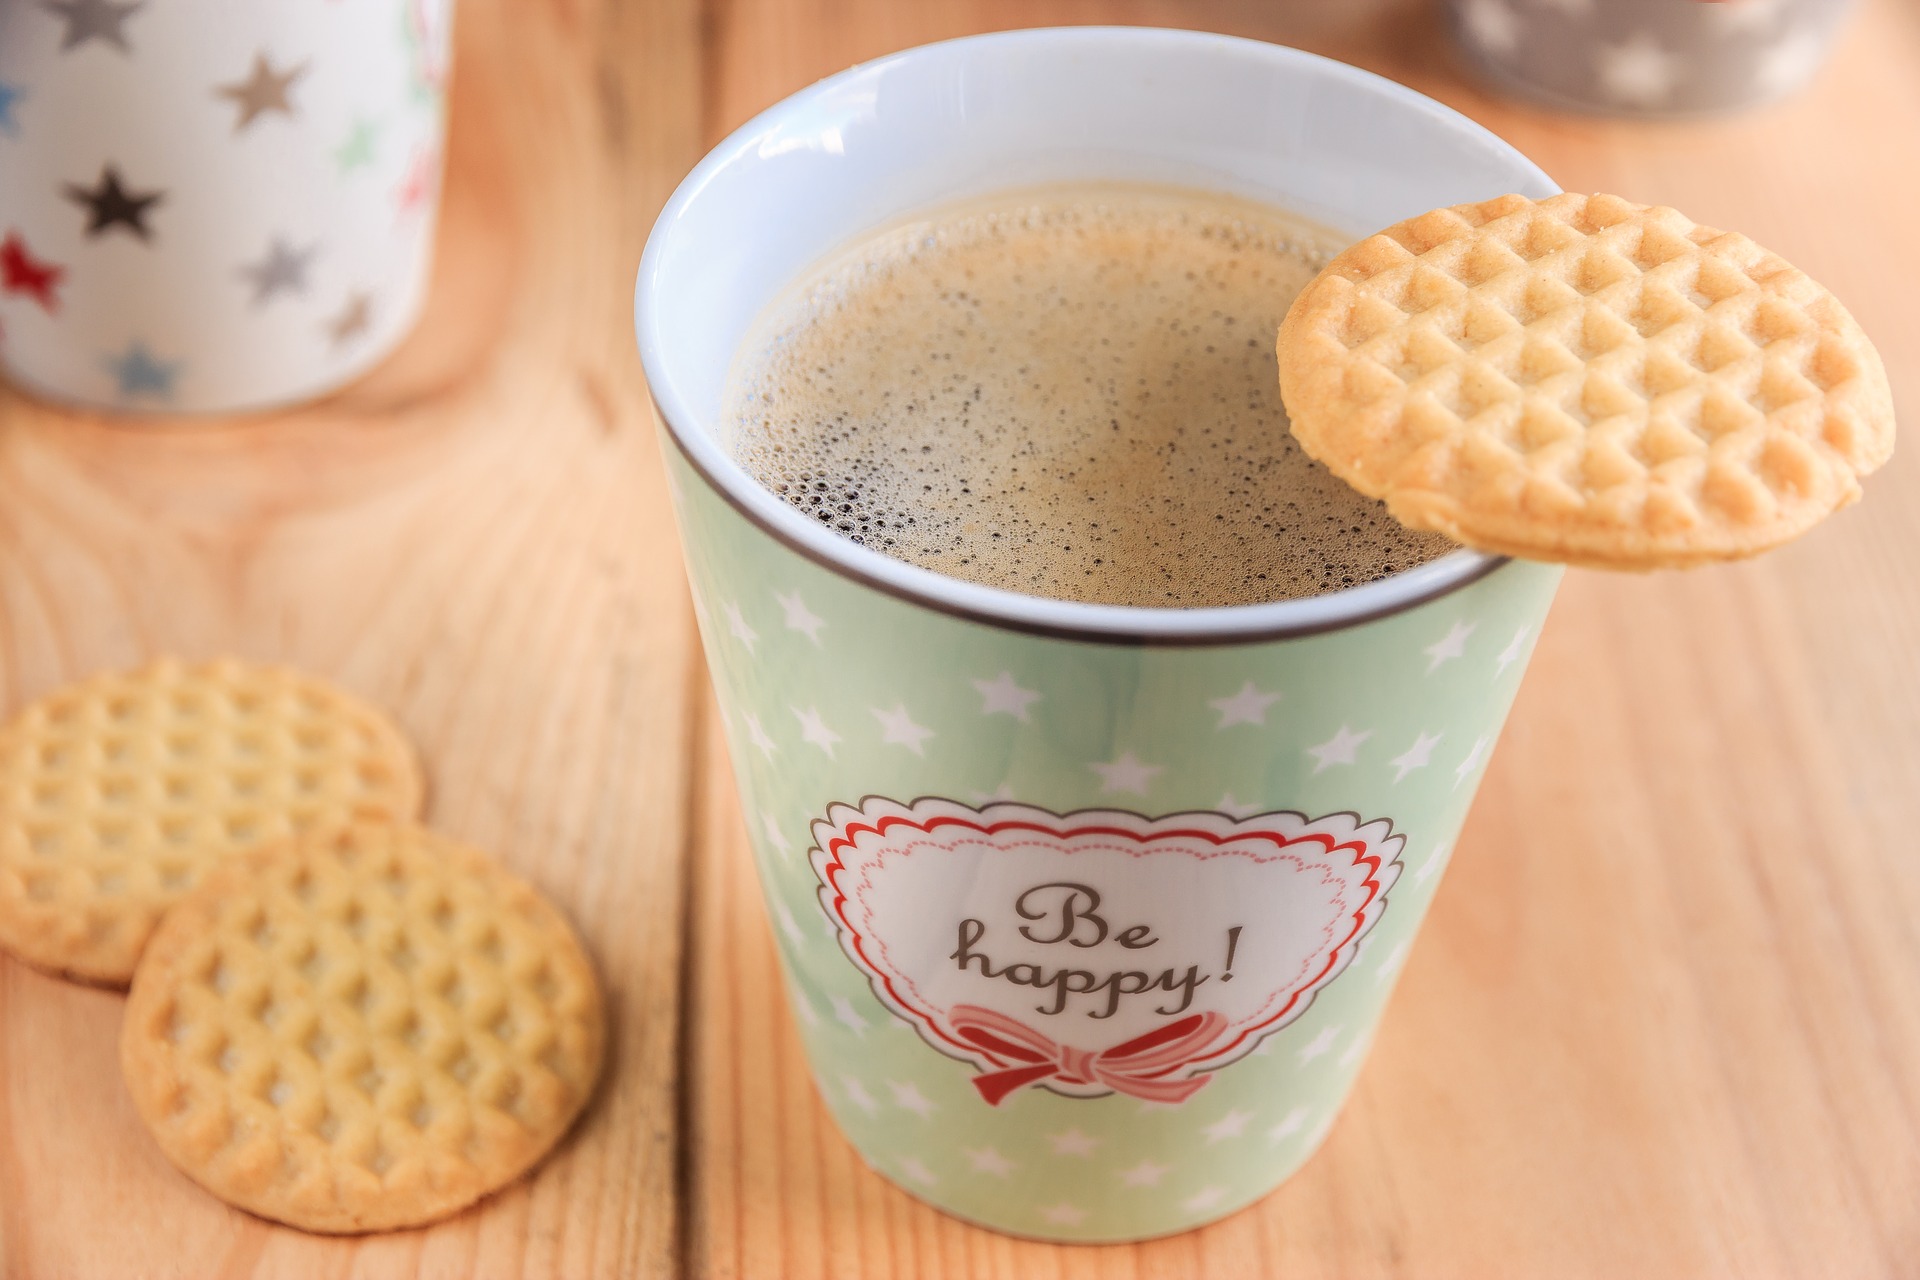 Kaffeebecher mit dem Aufdruck "be happy" und Keksen